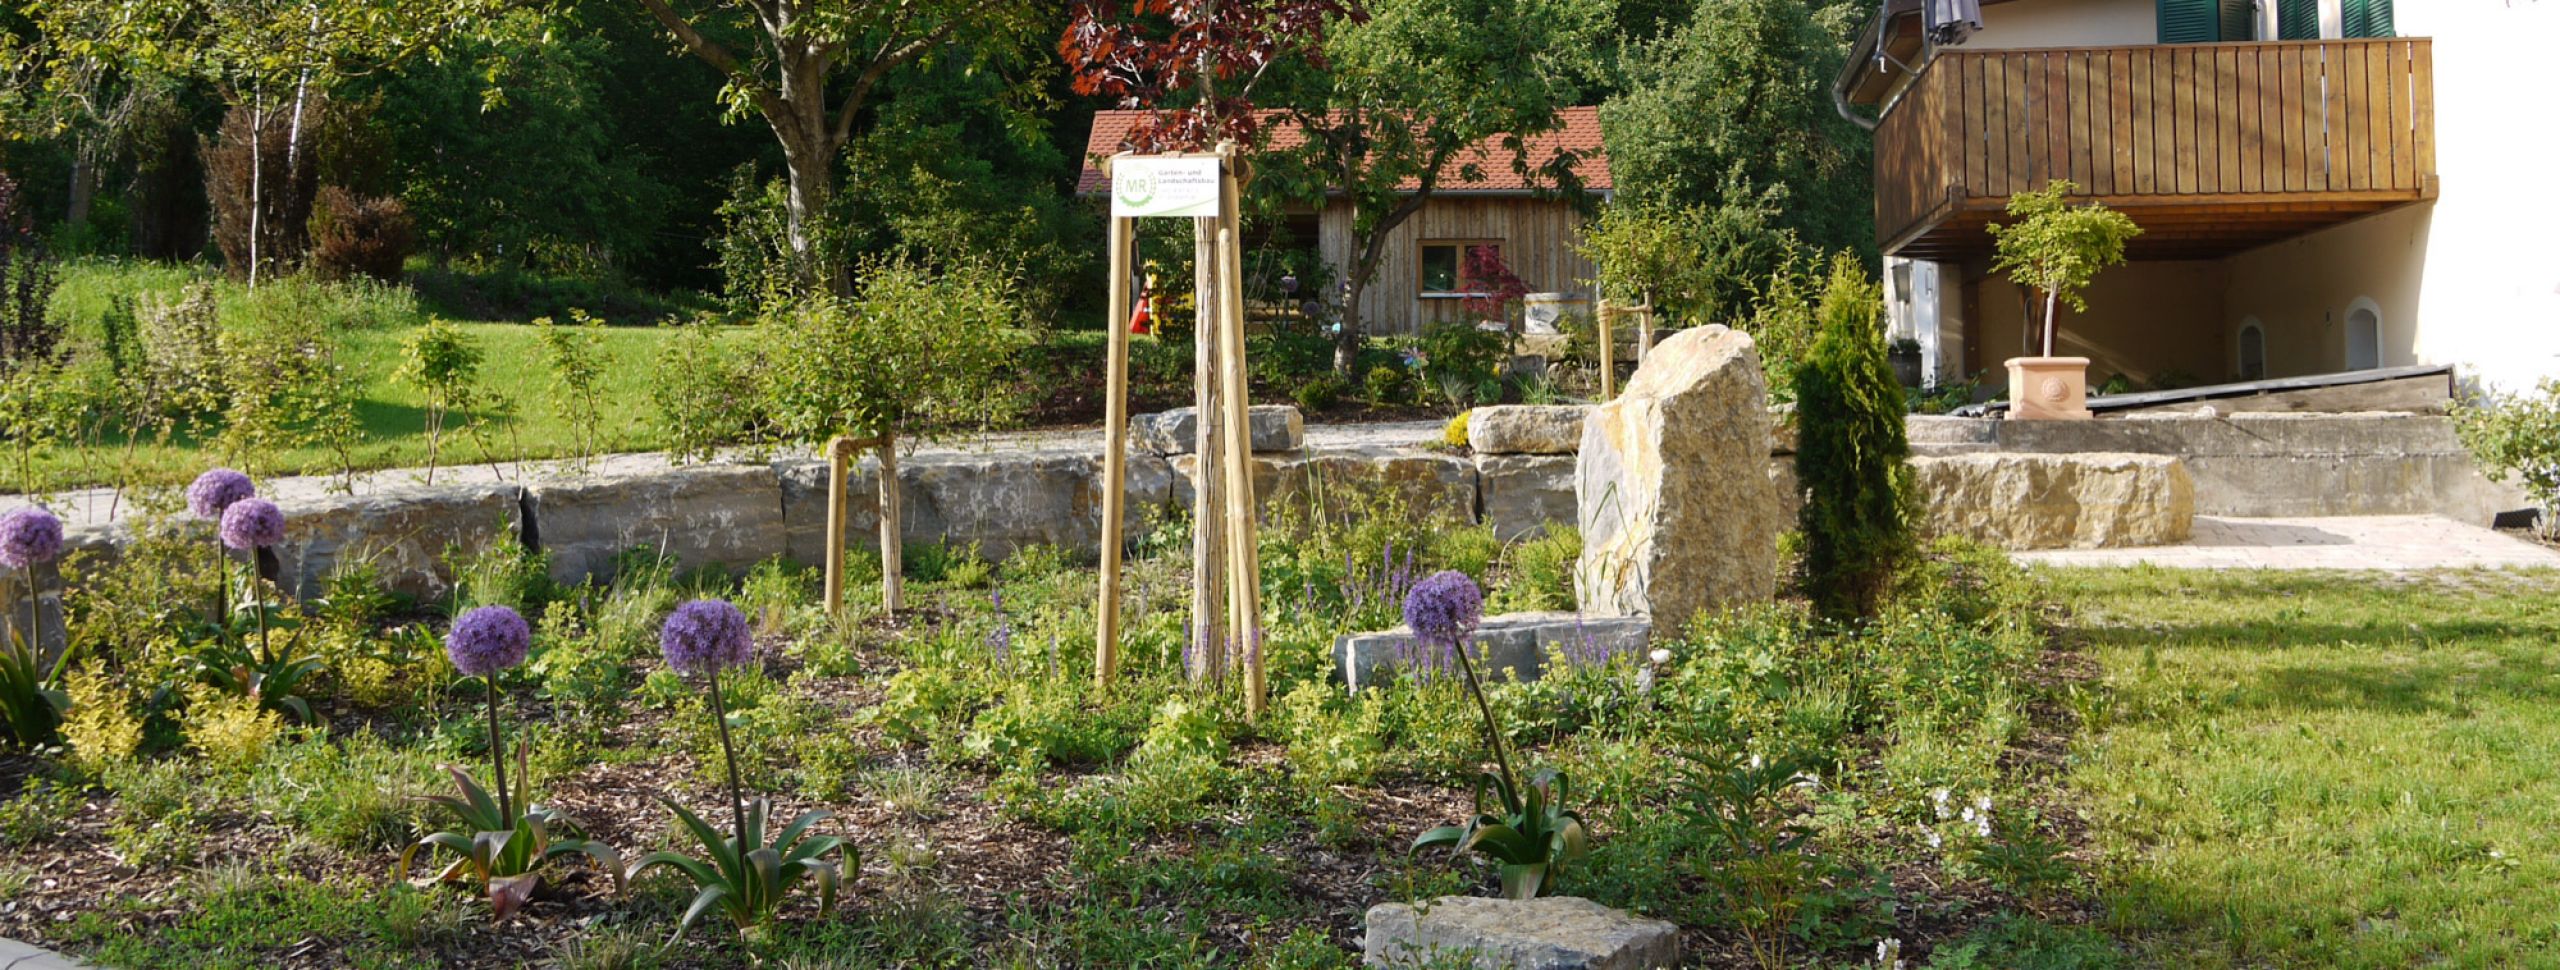 Gartenanlage & Pflege - Landschaftspflege des Maschinenring Ansbach